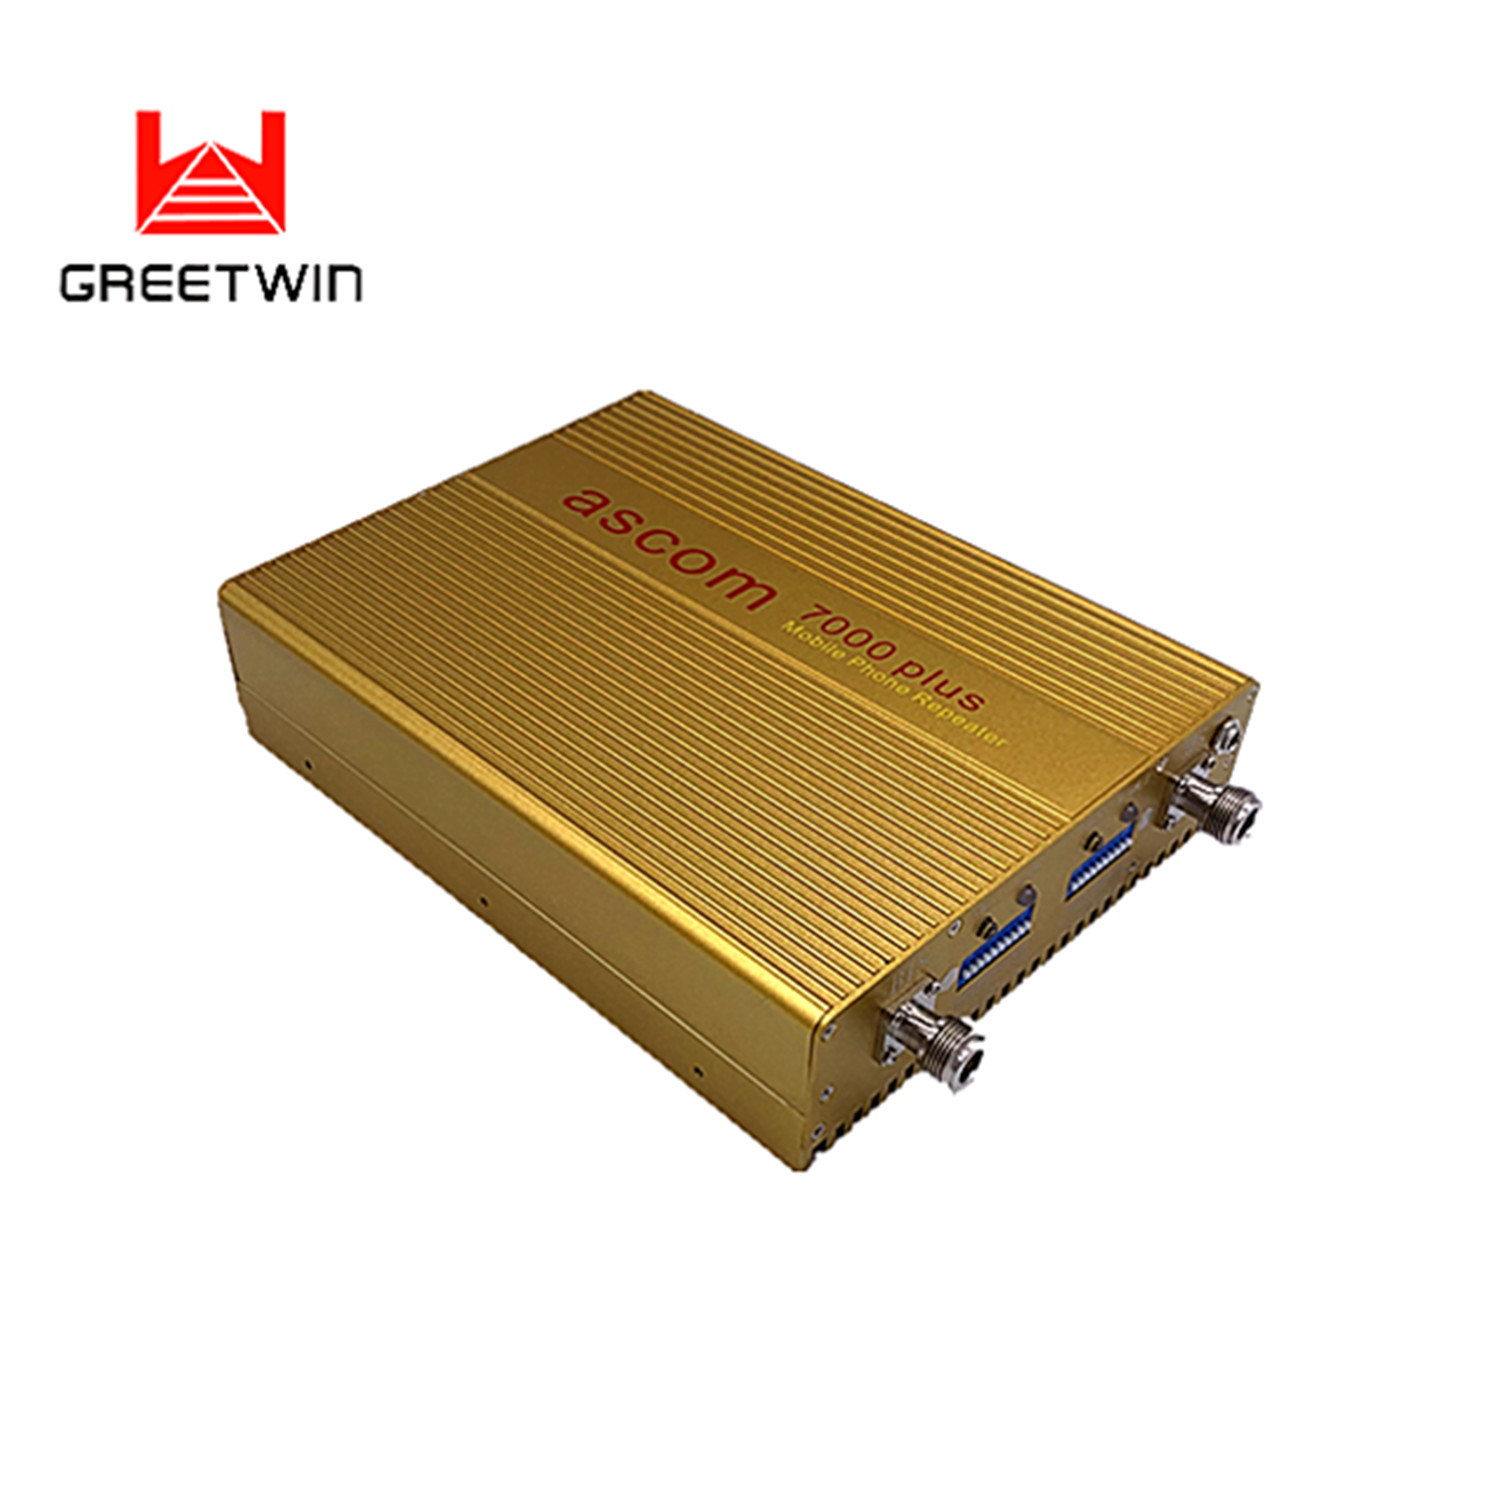 23dBm EGSM900 DCS1800 banda dupla 2g 3g 4g amplificador de sinal repetidor de celular